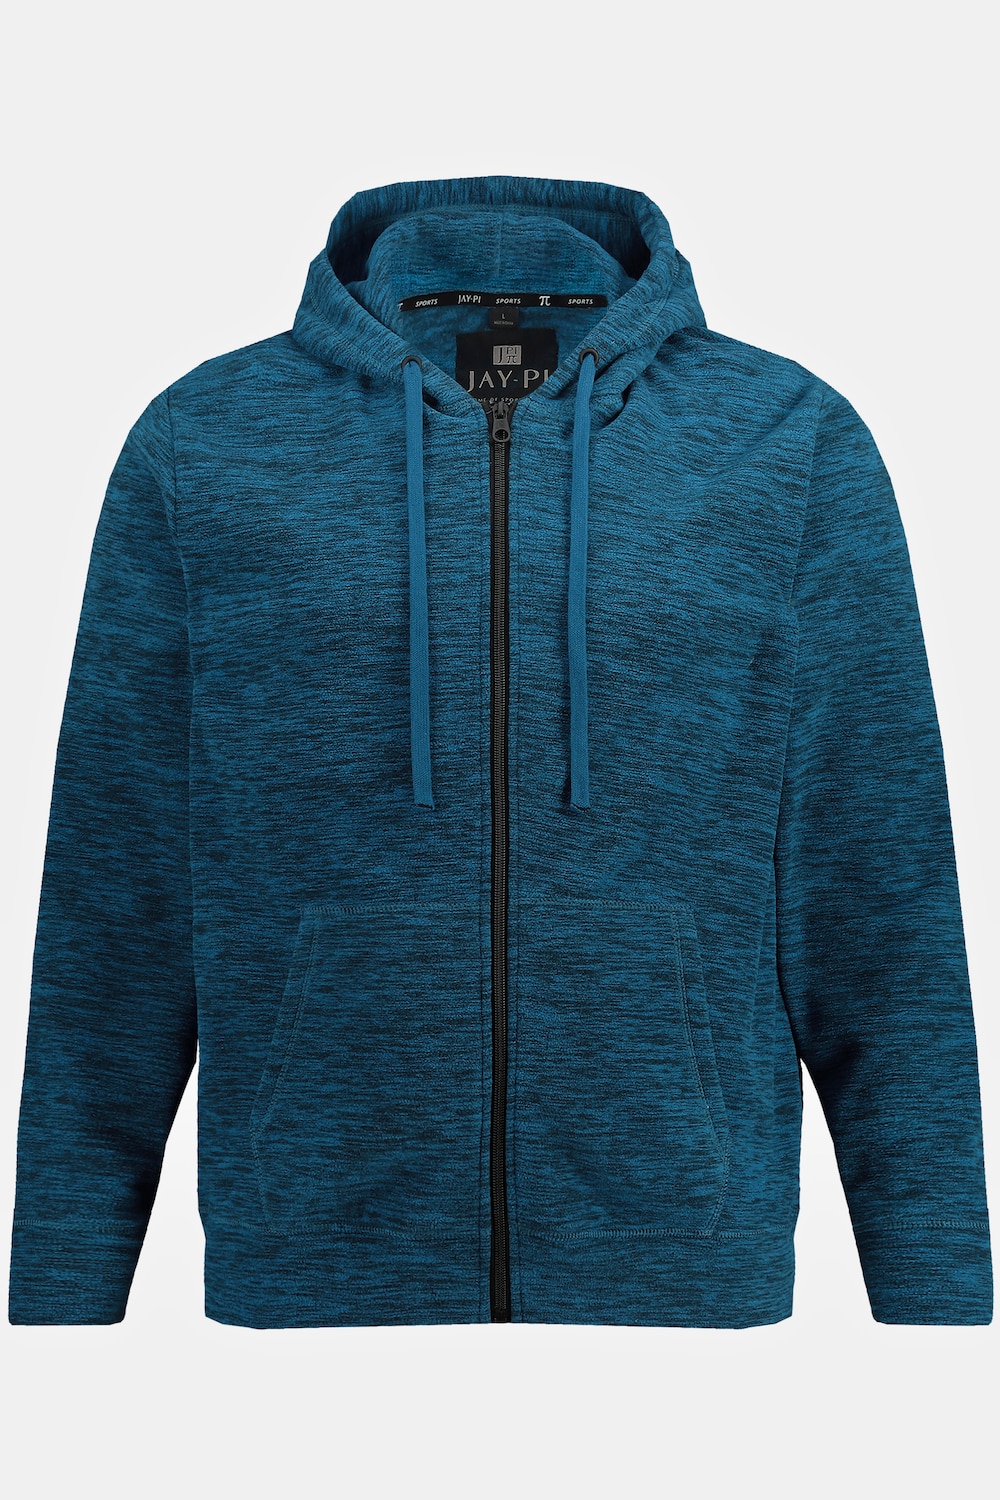 Grote Maten JAY-PI gebreid fleece hoodie-jackmale, blauw, Maat: 4XL, Polyester, JAY-PI